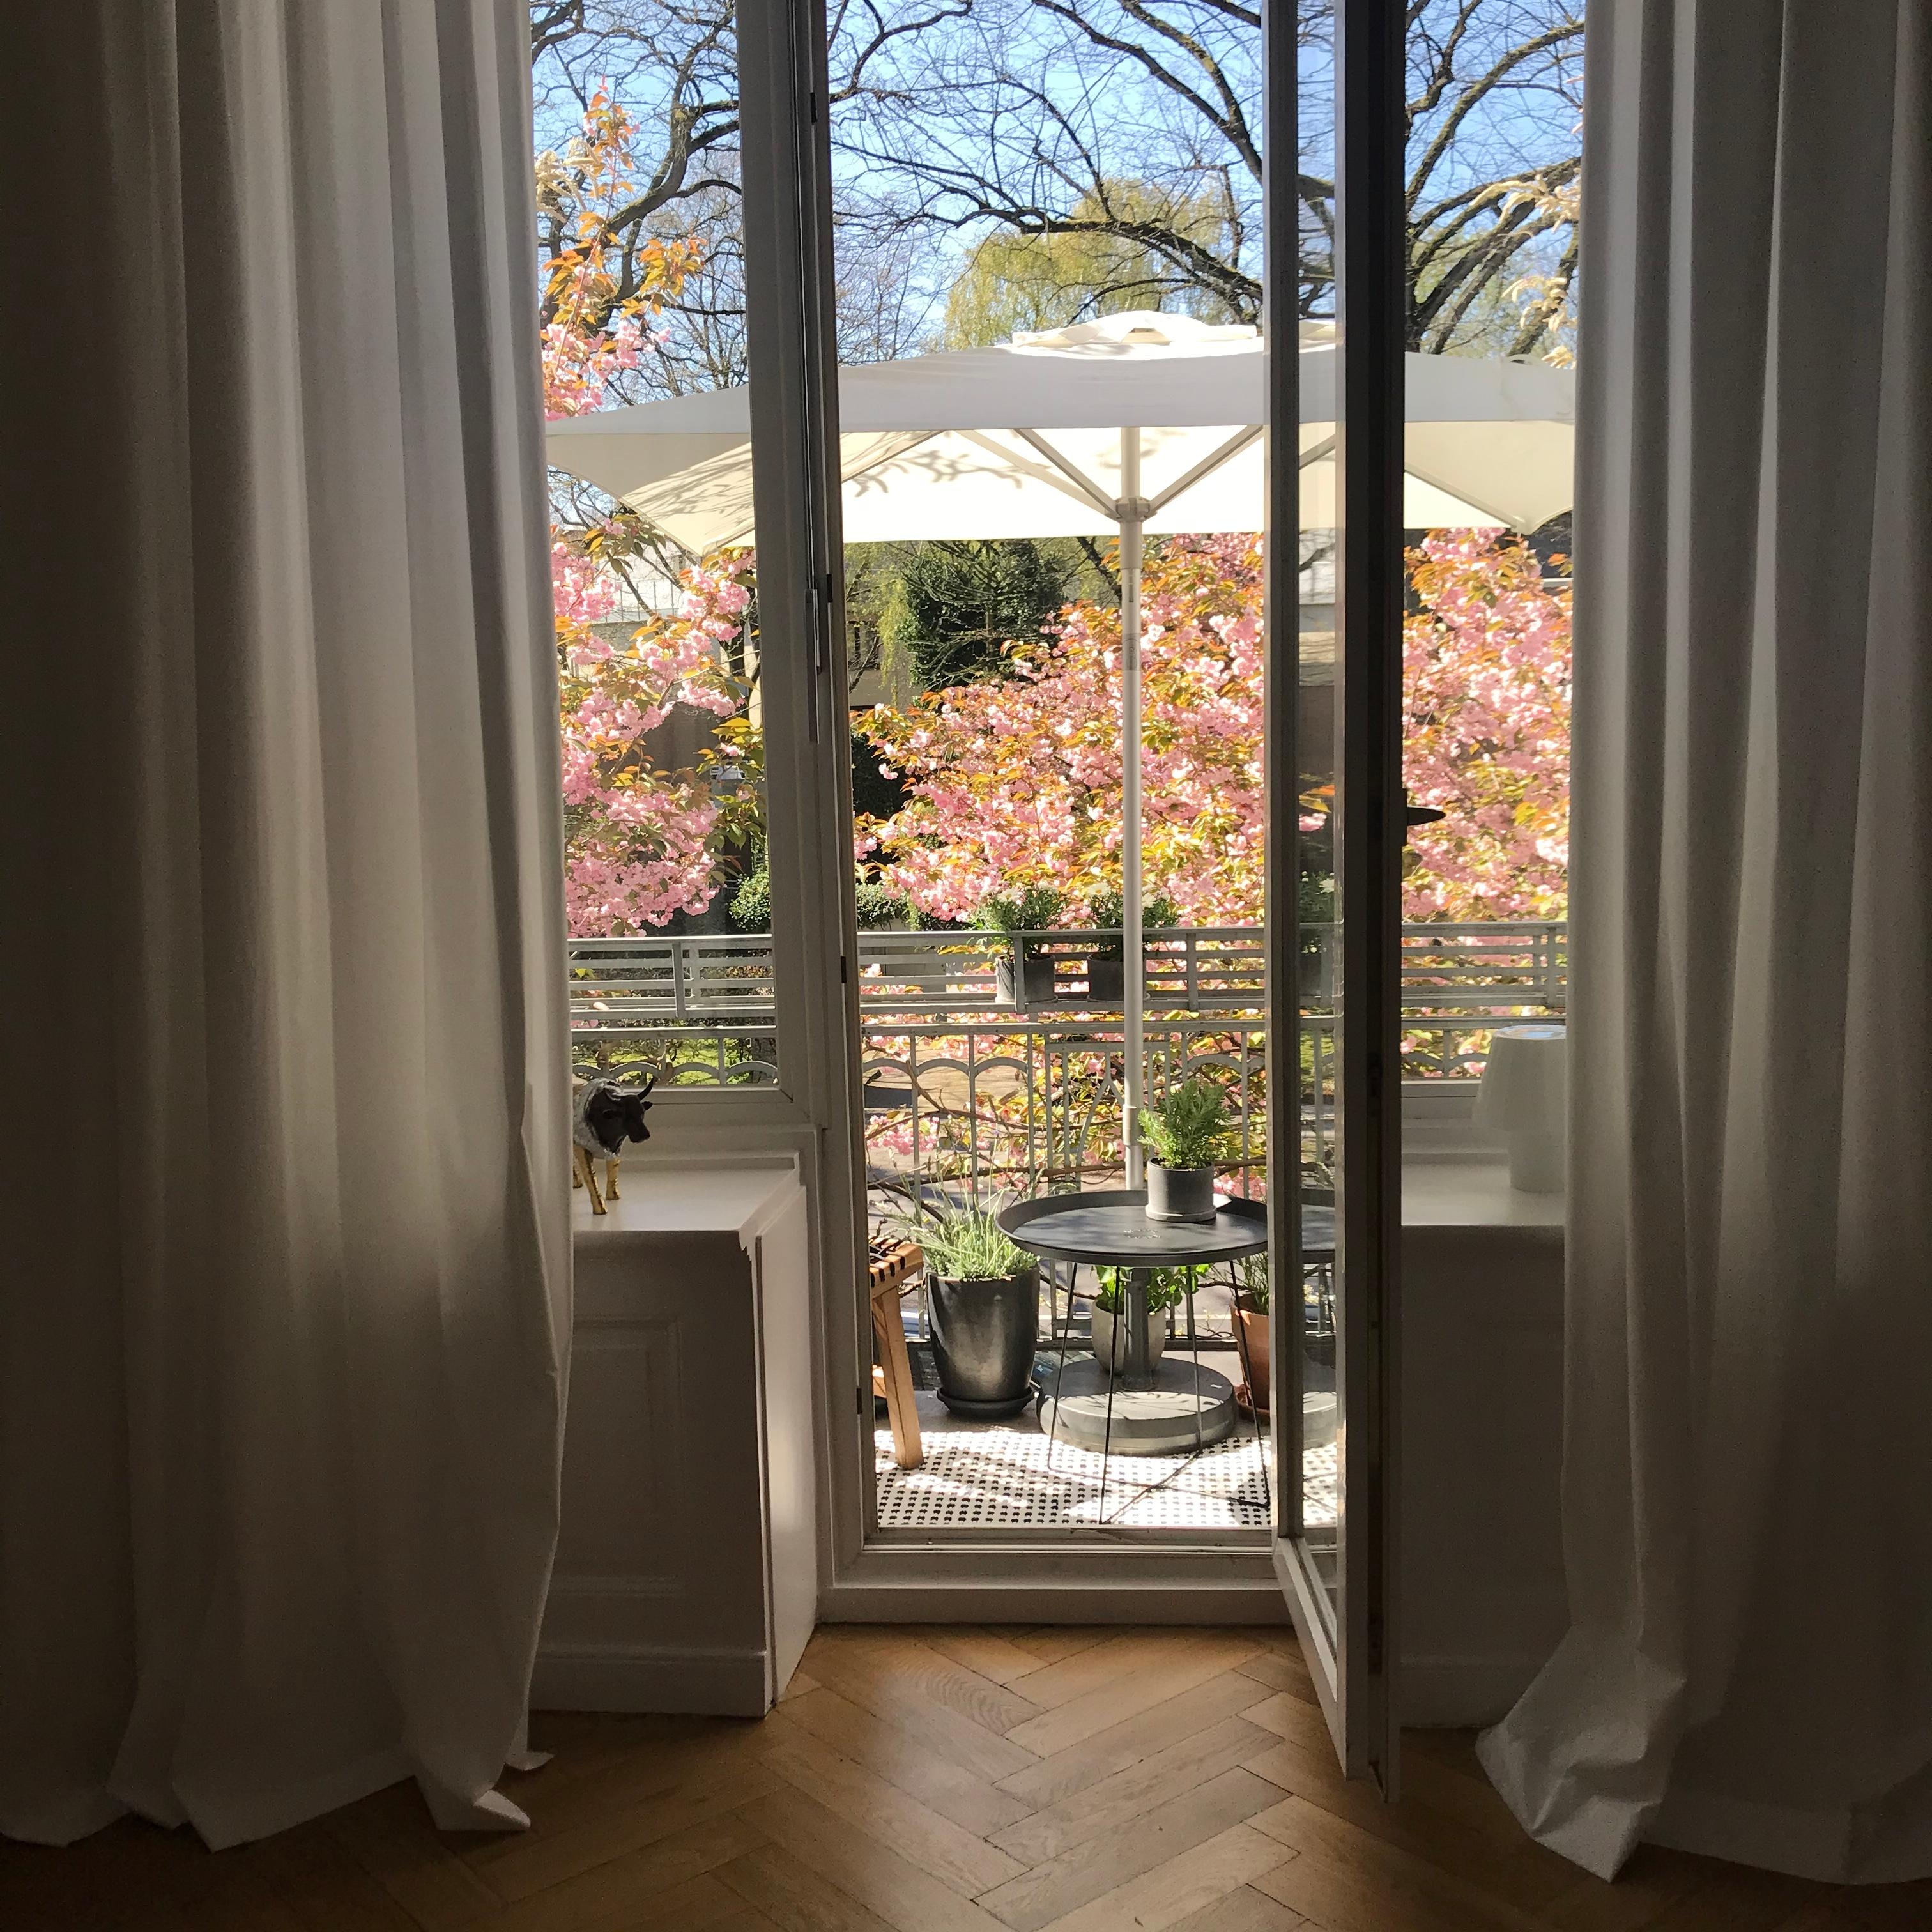 Langsam gibt es hier einen #blütenregen von oben 😅🌸 #kirschblüten #balkon #living #balkony #altbau #couchliebt 